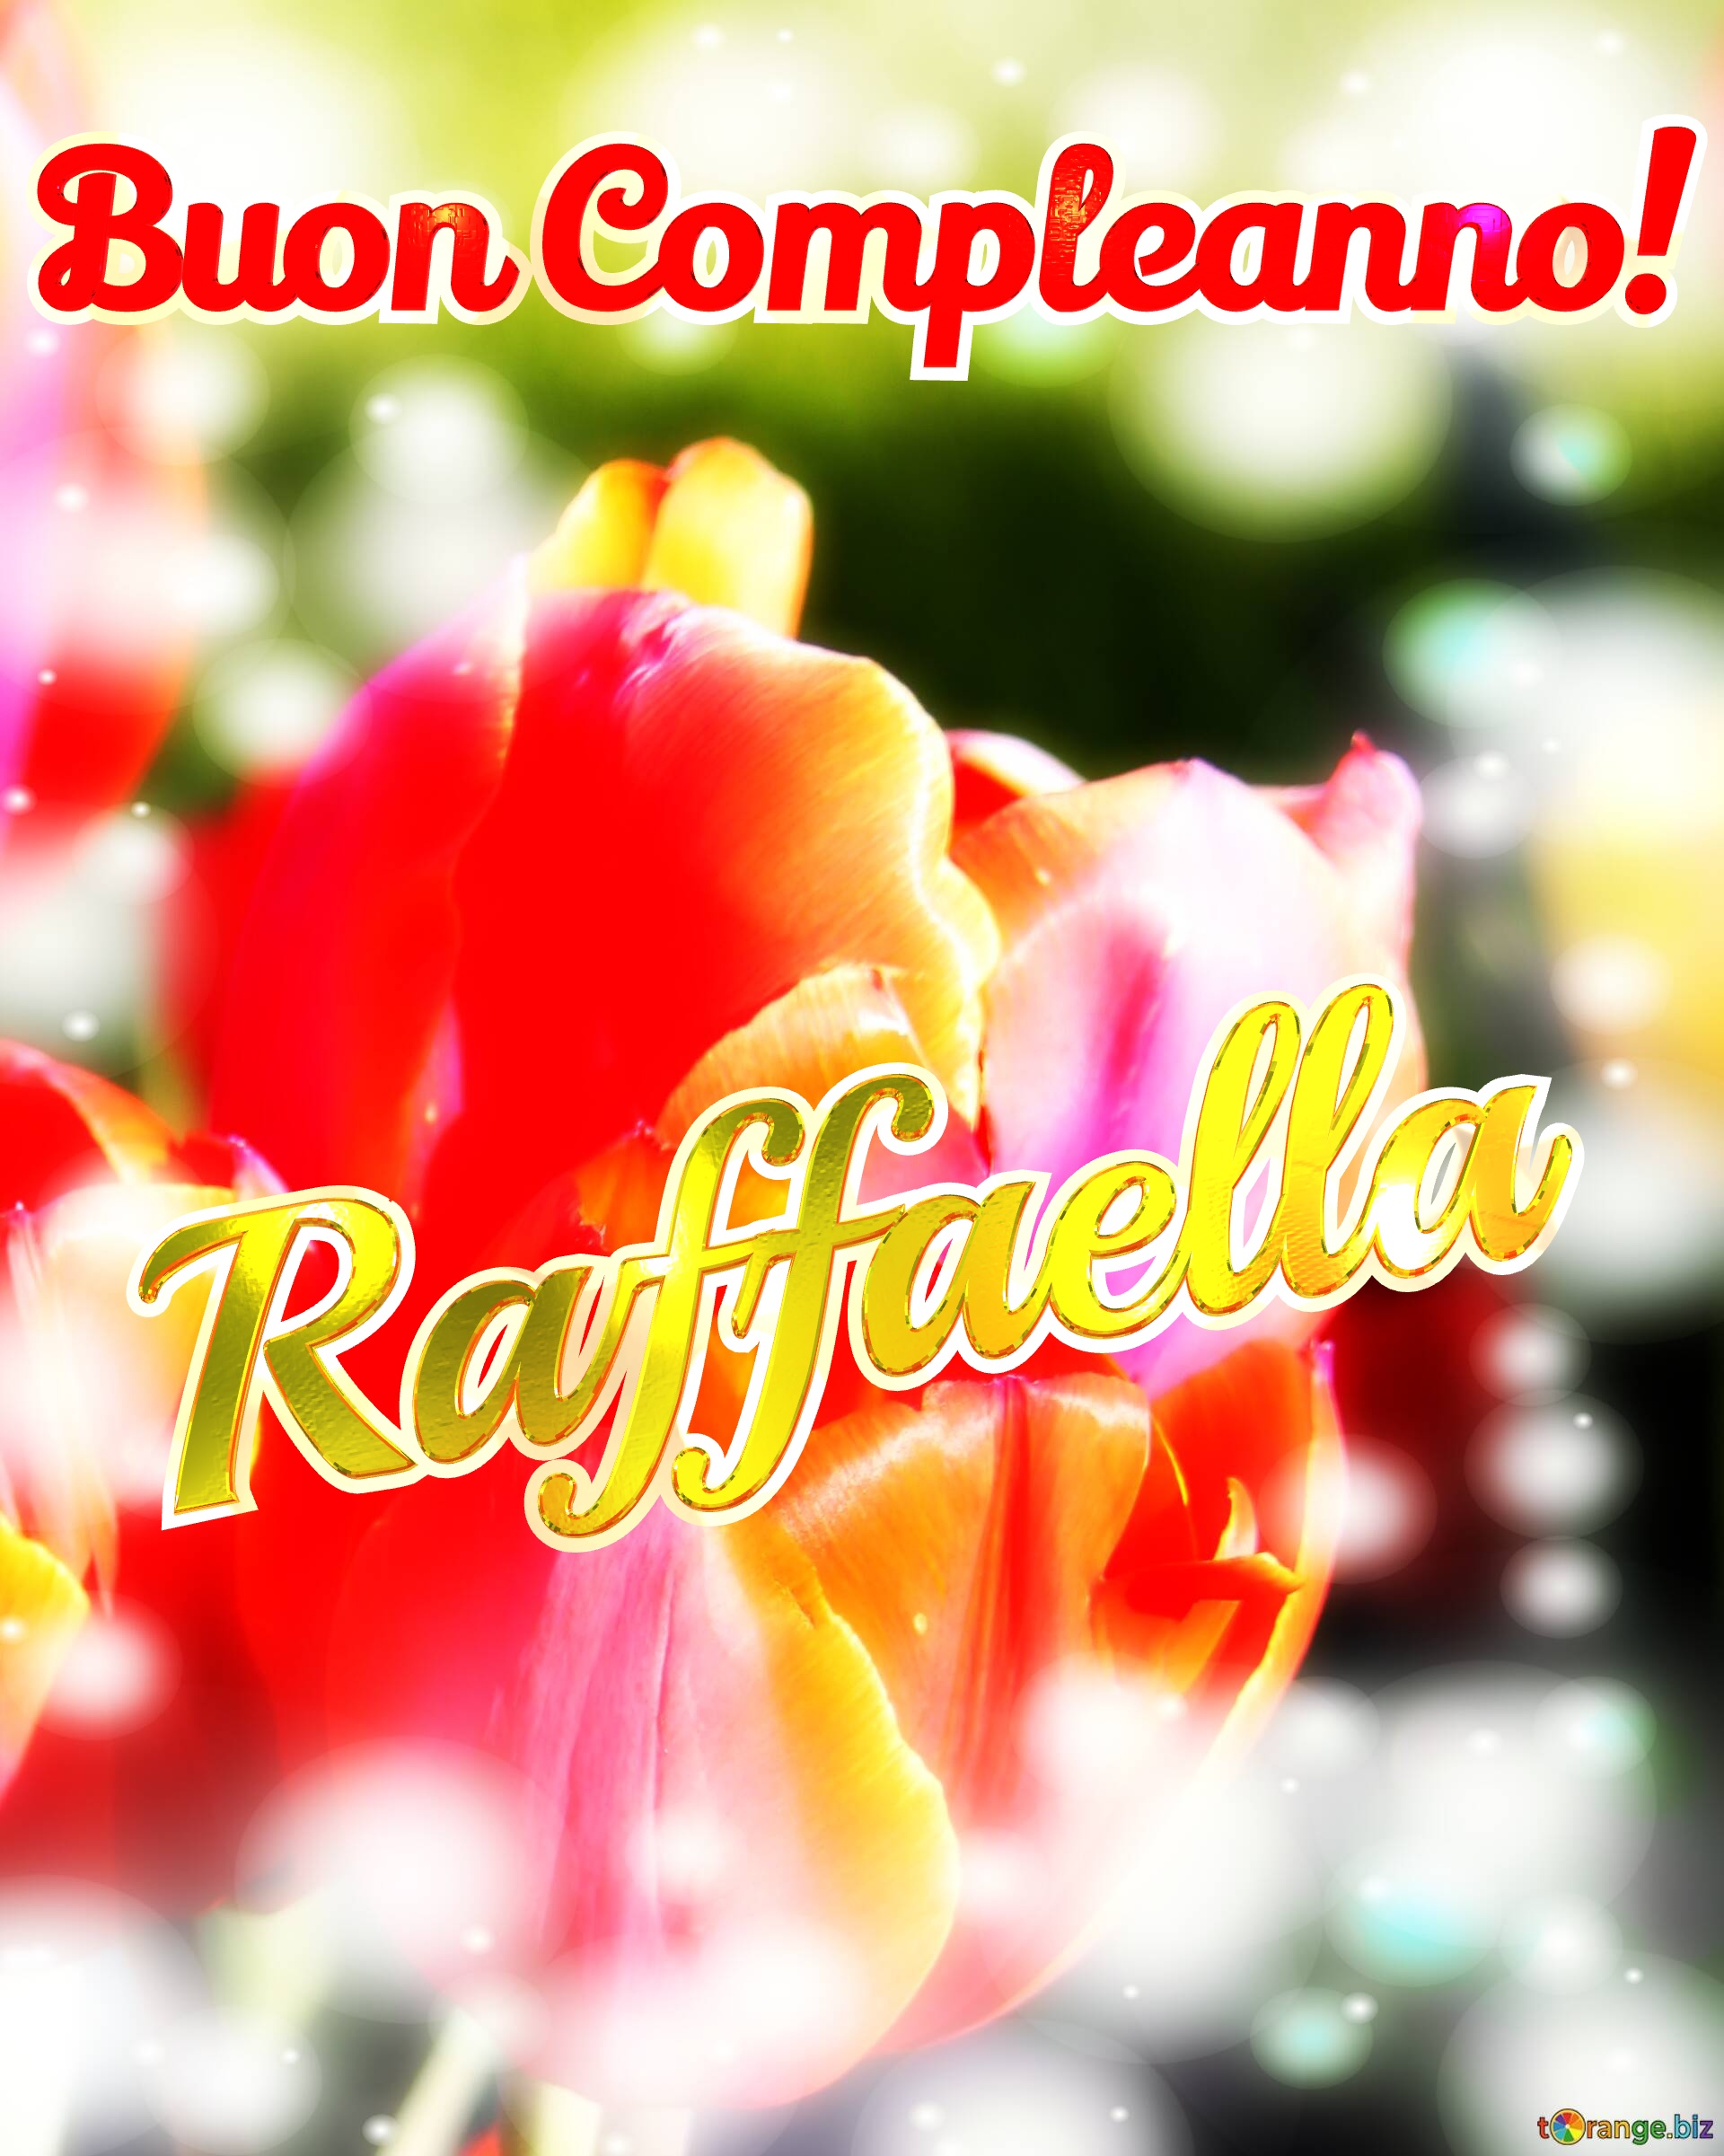 Buon Compleanno! Raffaella  Buona primavera, che questi tulipani ti portino la freschezza e la vitalità della primavera. №0